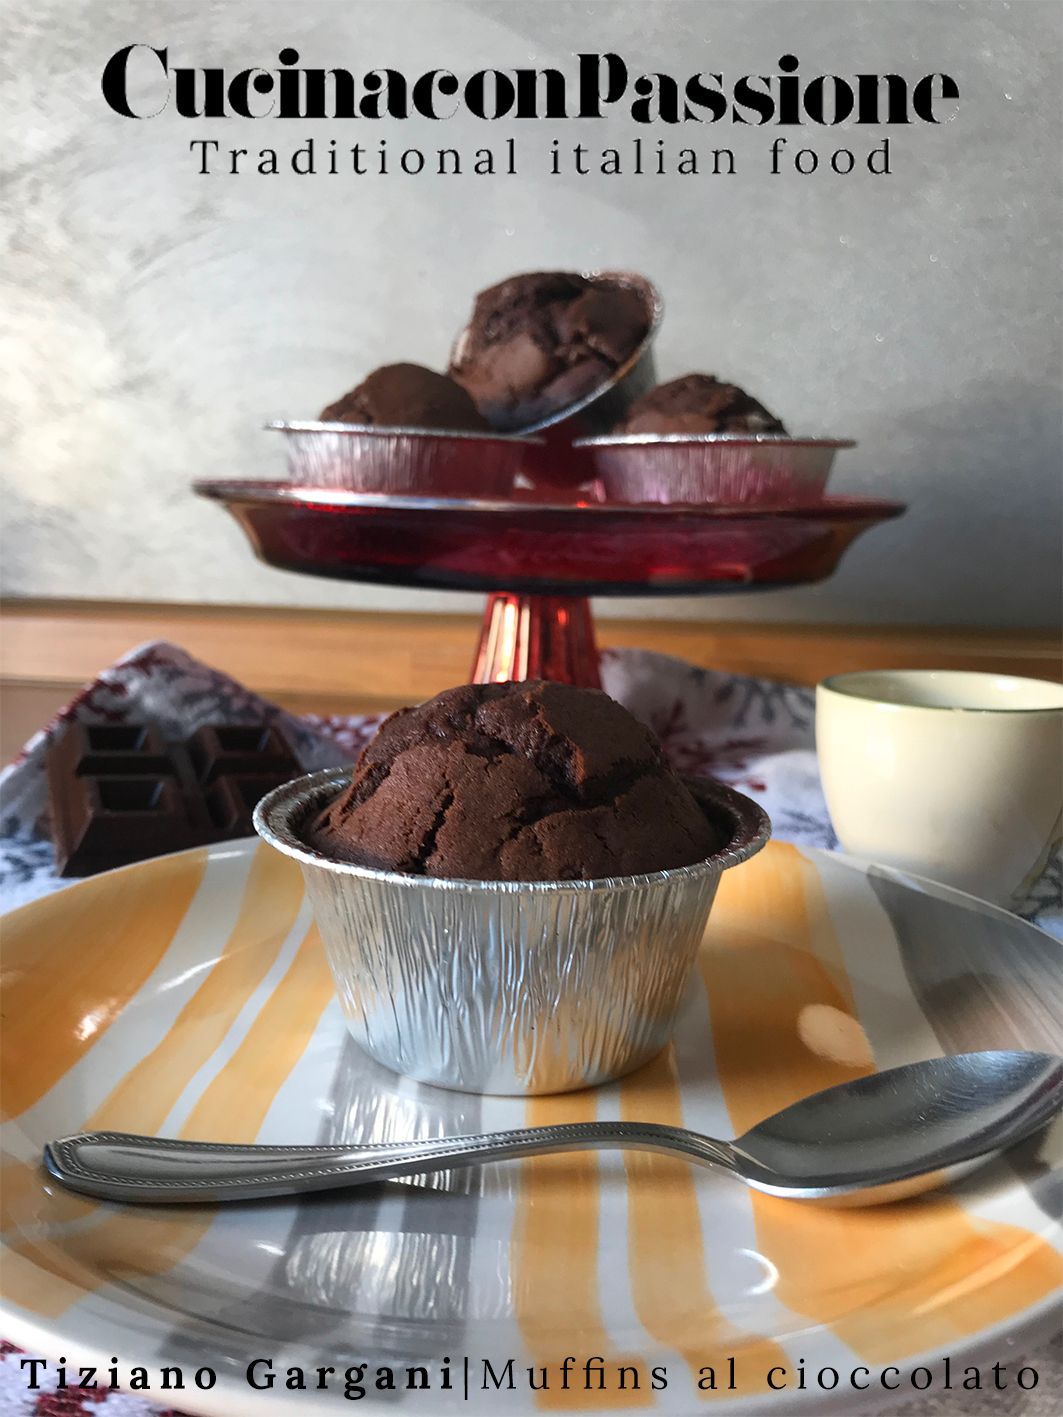 muffins al cioccolato - Muffins al cioccolato - Muffins al cioccolato